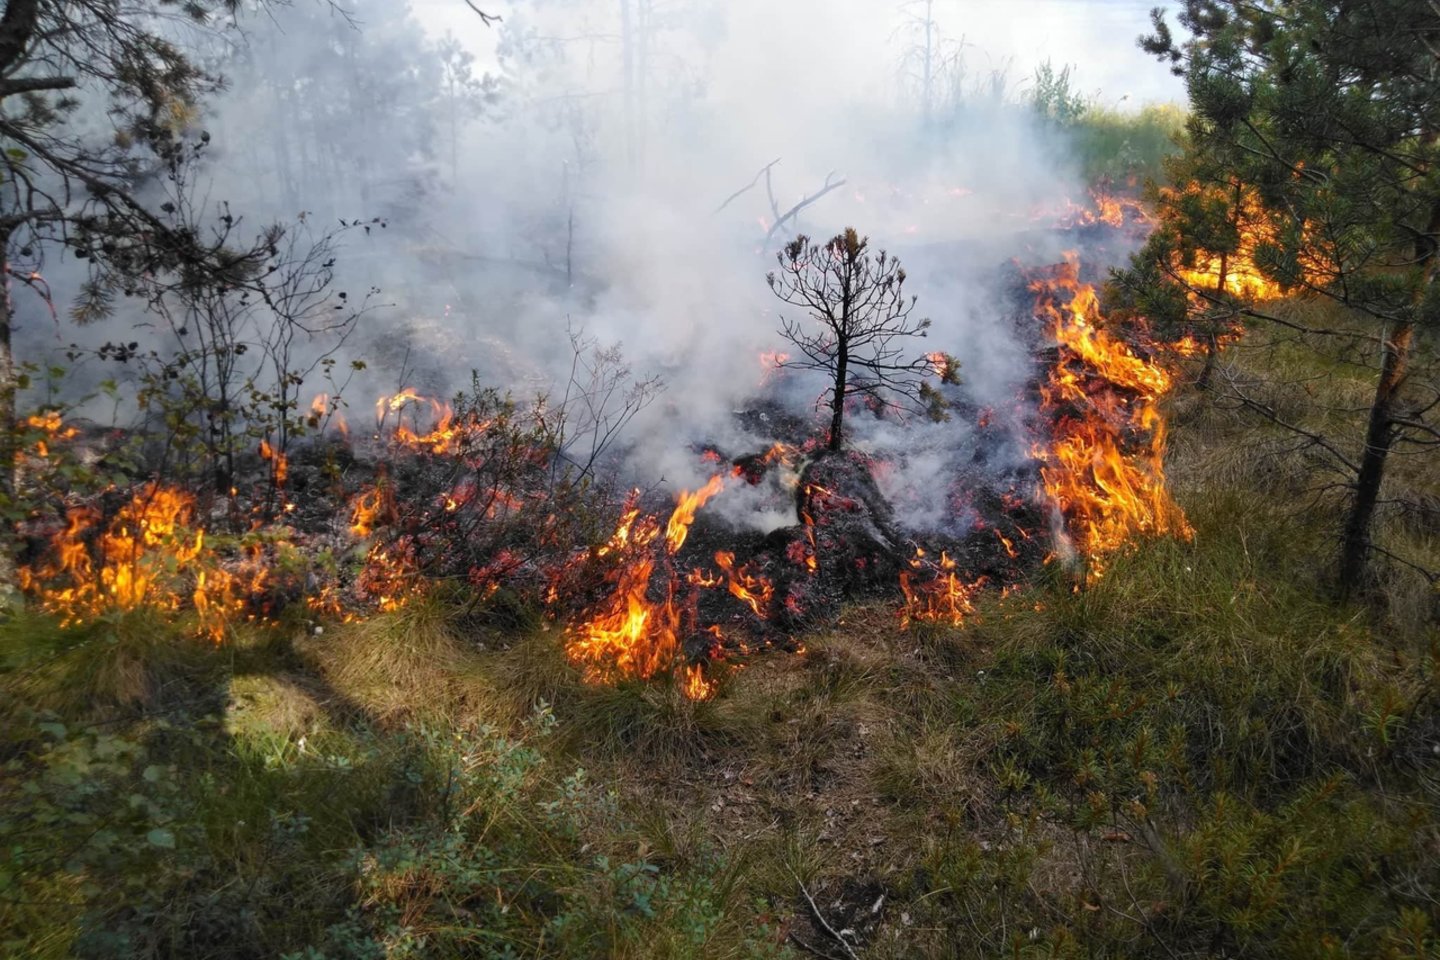 Savaitgalį Lietuvoje kilo 288 gaisrai gamtoje, per juos išdegė apie 135 ha pievų, miško paklotės ir kitų atvirųjų teritorijų.<br>VMU nuotr.